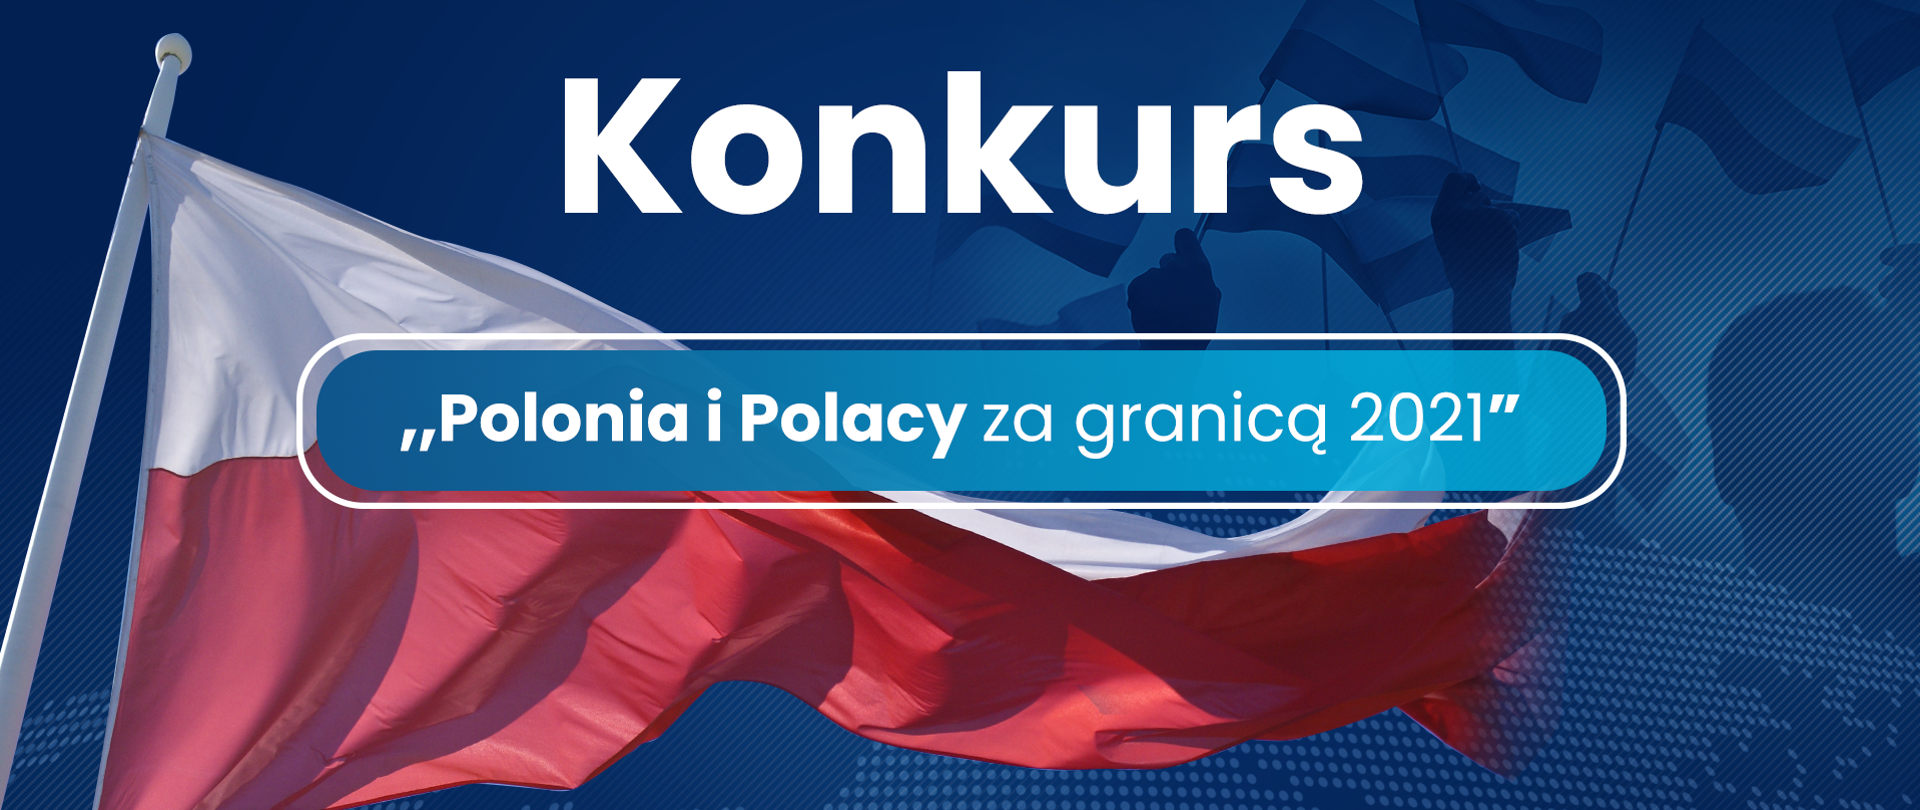 Konkurs "Polonia i Polacy za granicą 2021"